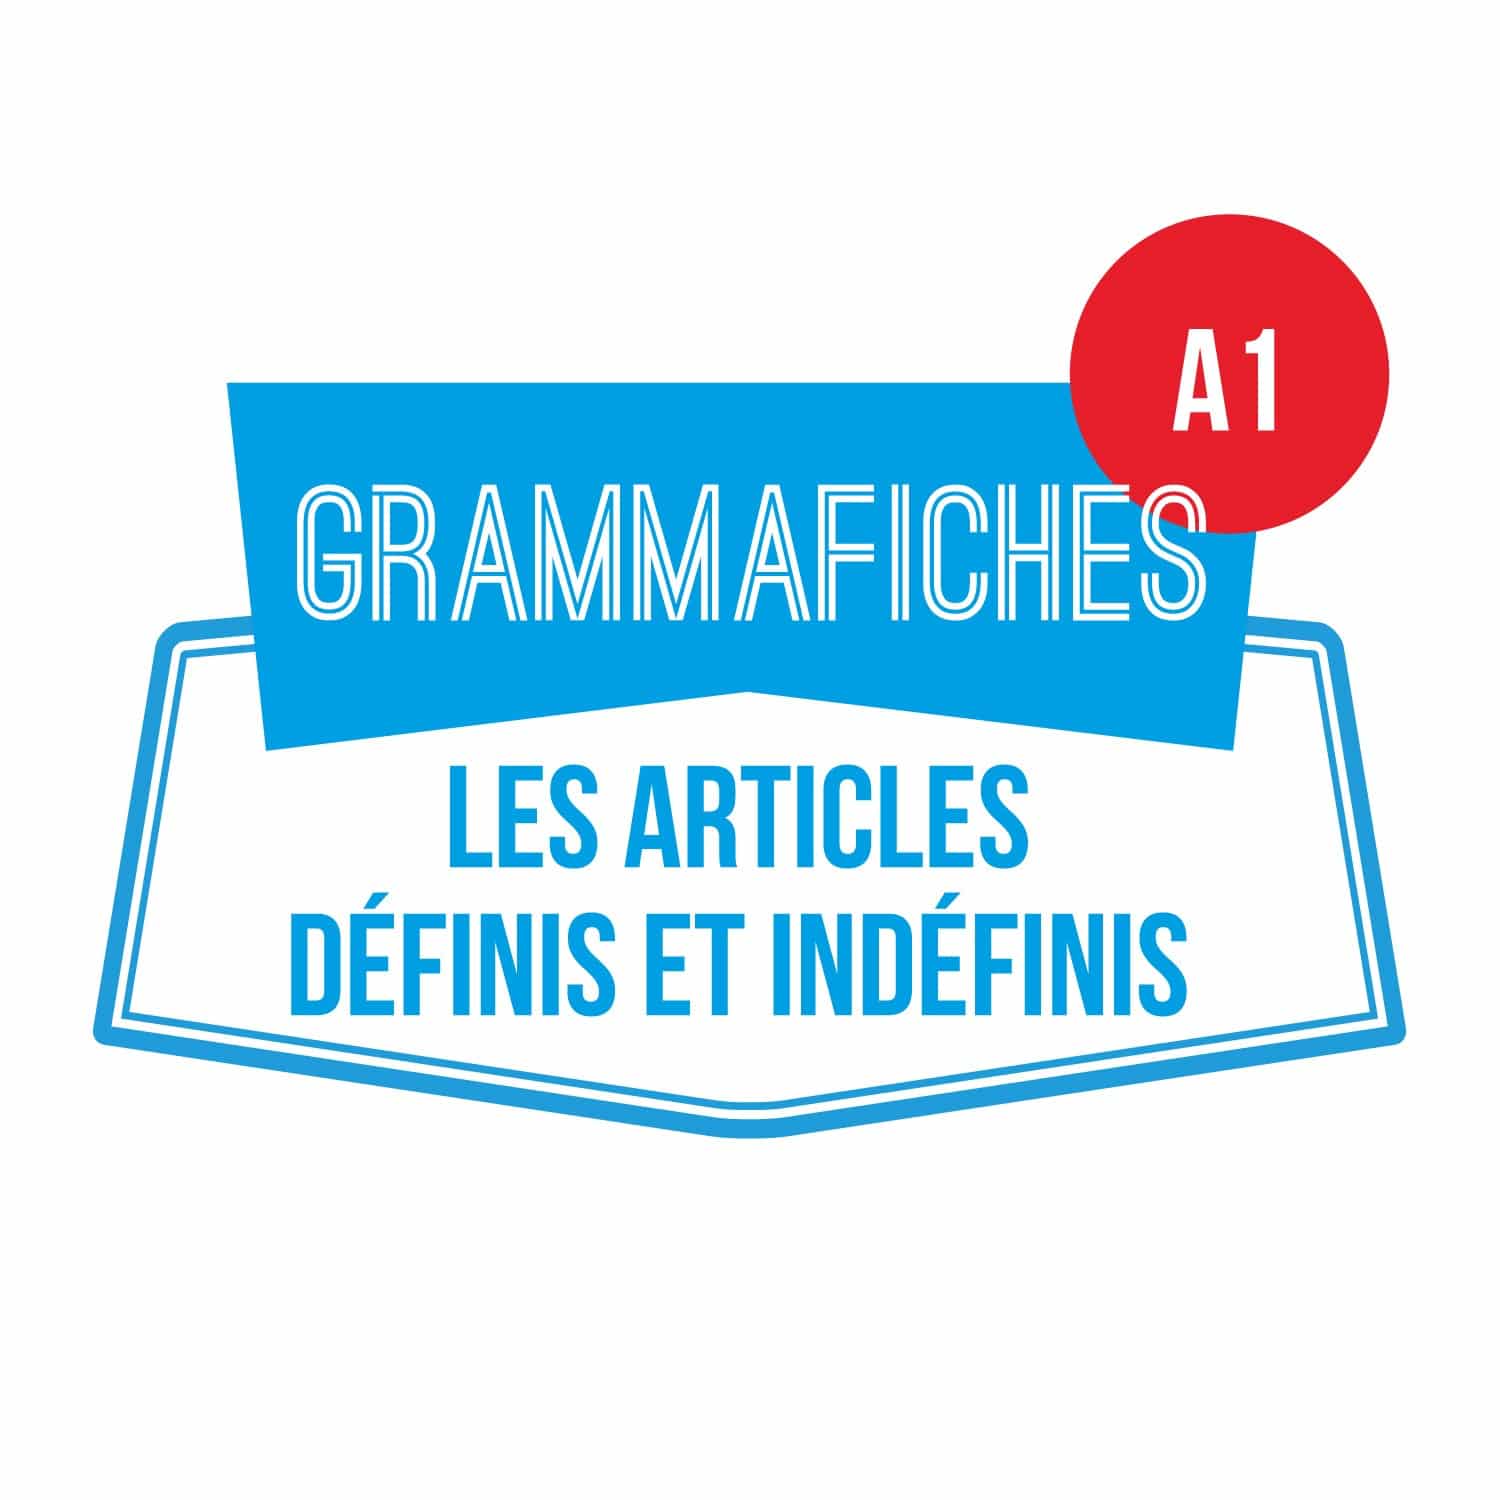 Grammafiche A1 : les articles définis et indéfinis